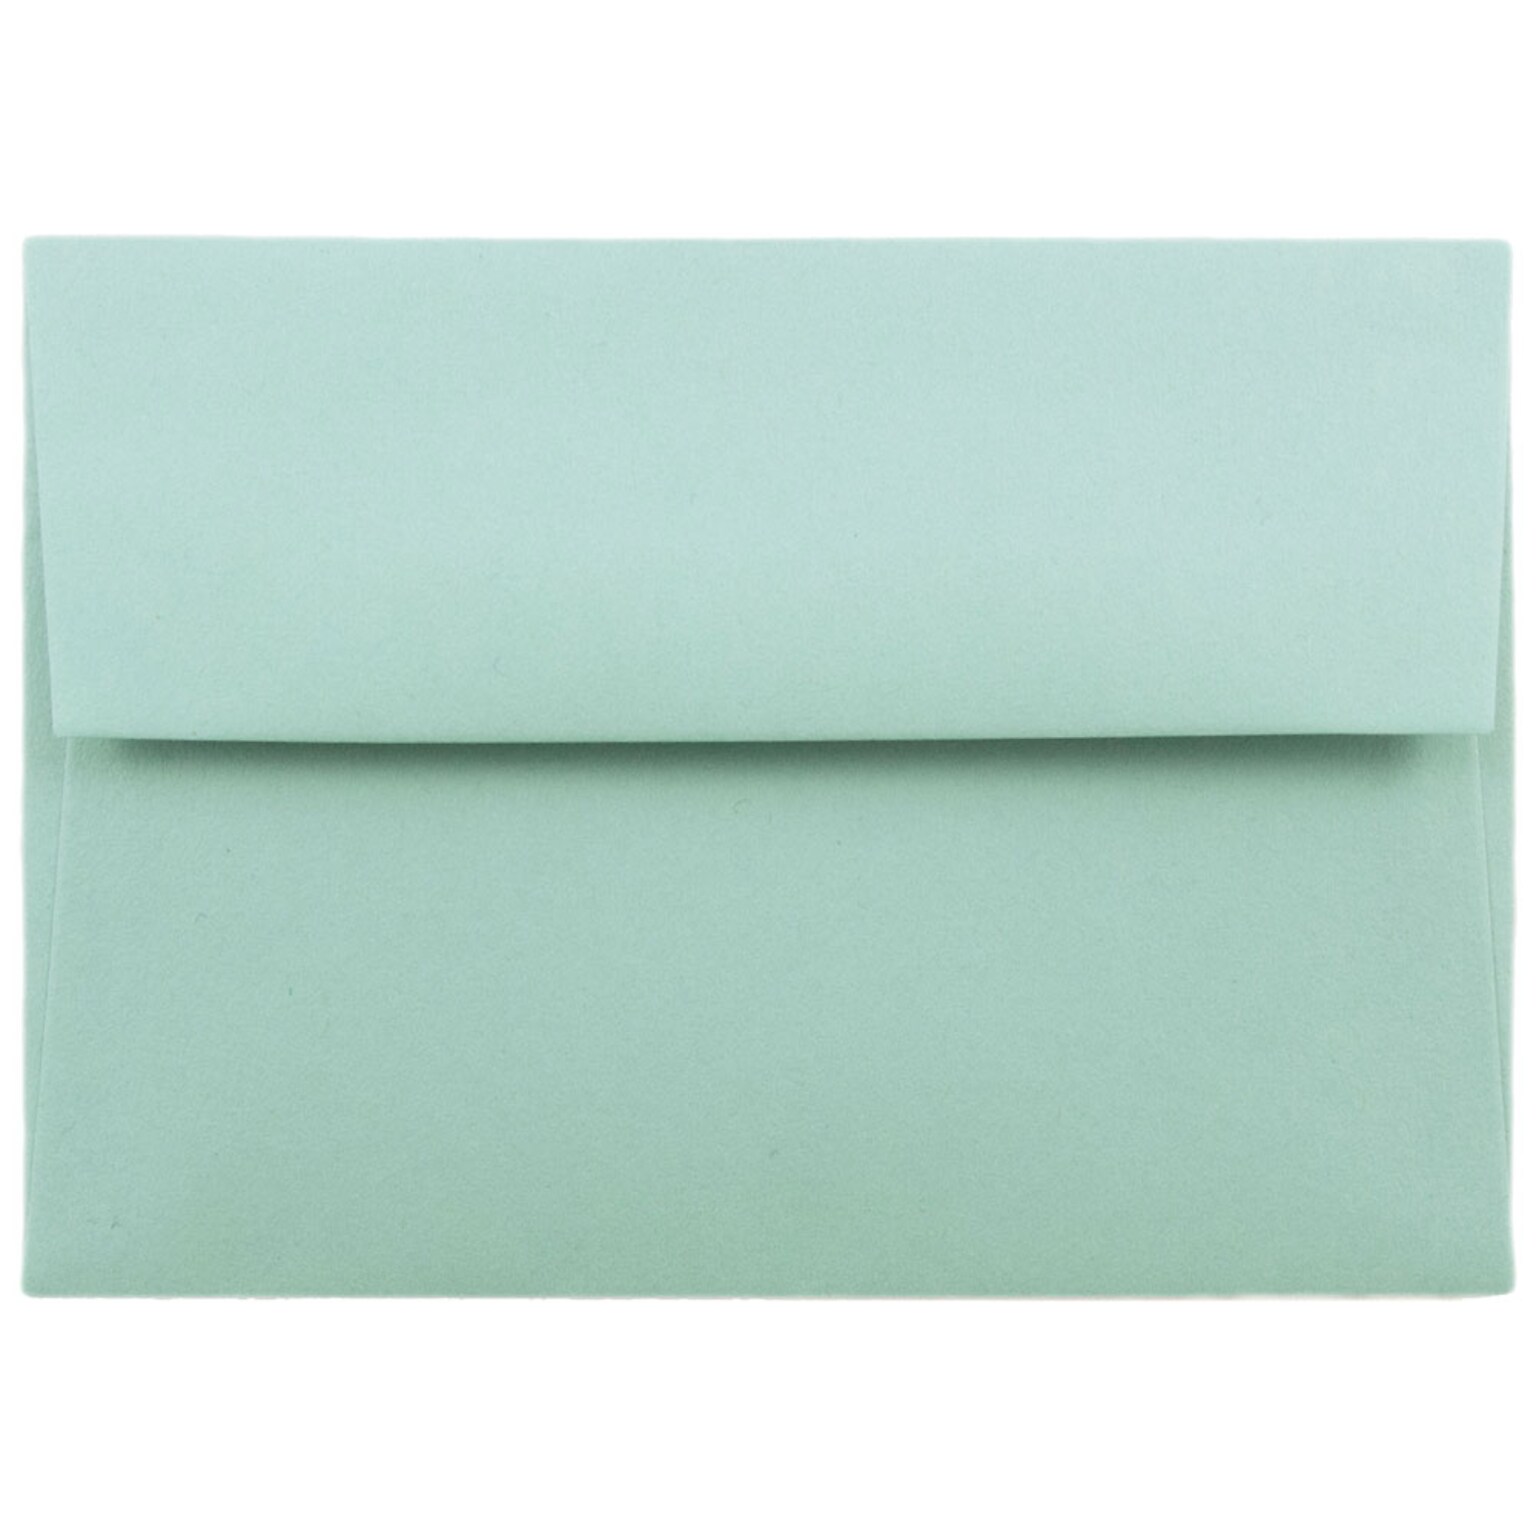 JAM Paper A2 Invitation Envelopes, 4.375 x 5.75, Aqua Blue, 25/Pack (1523981)